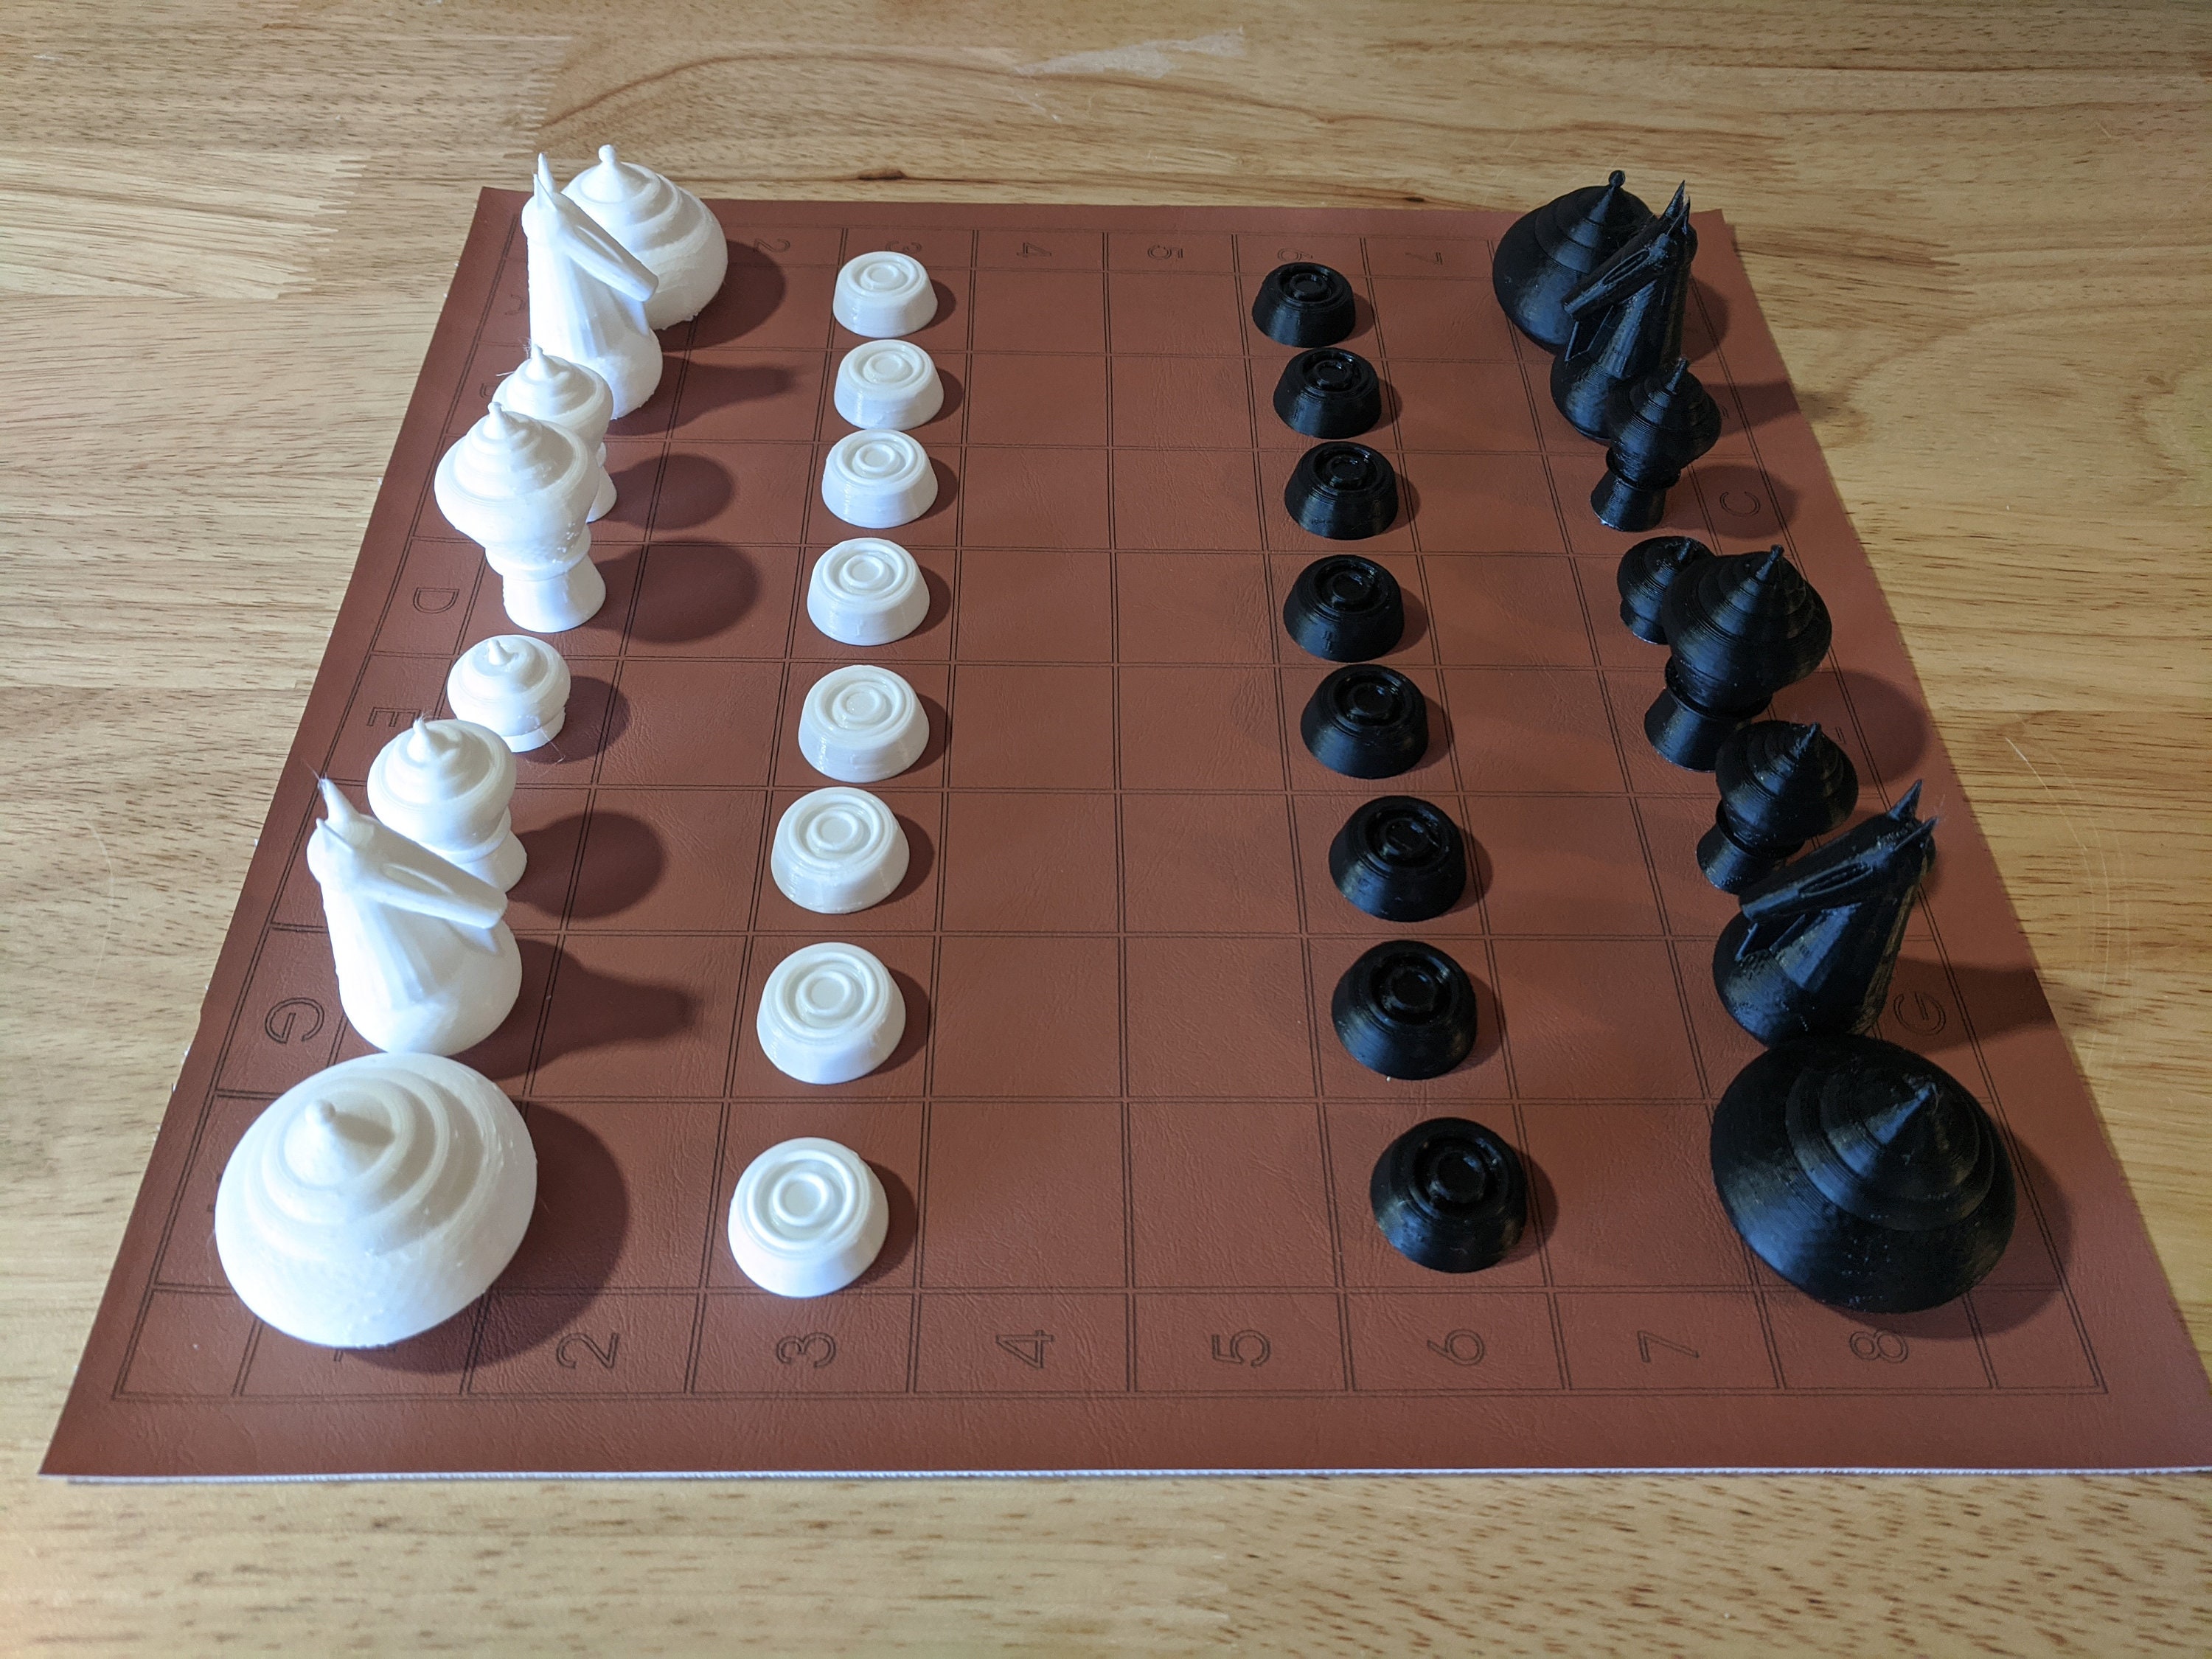 Korean chess set